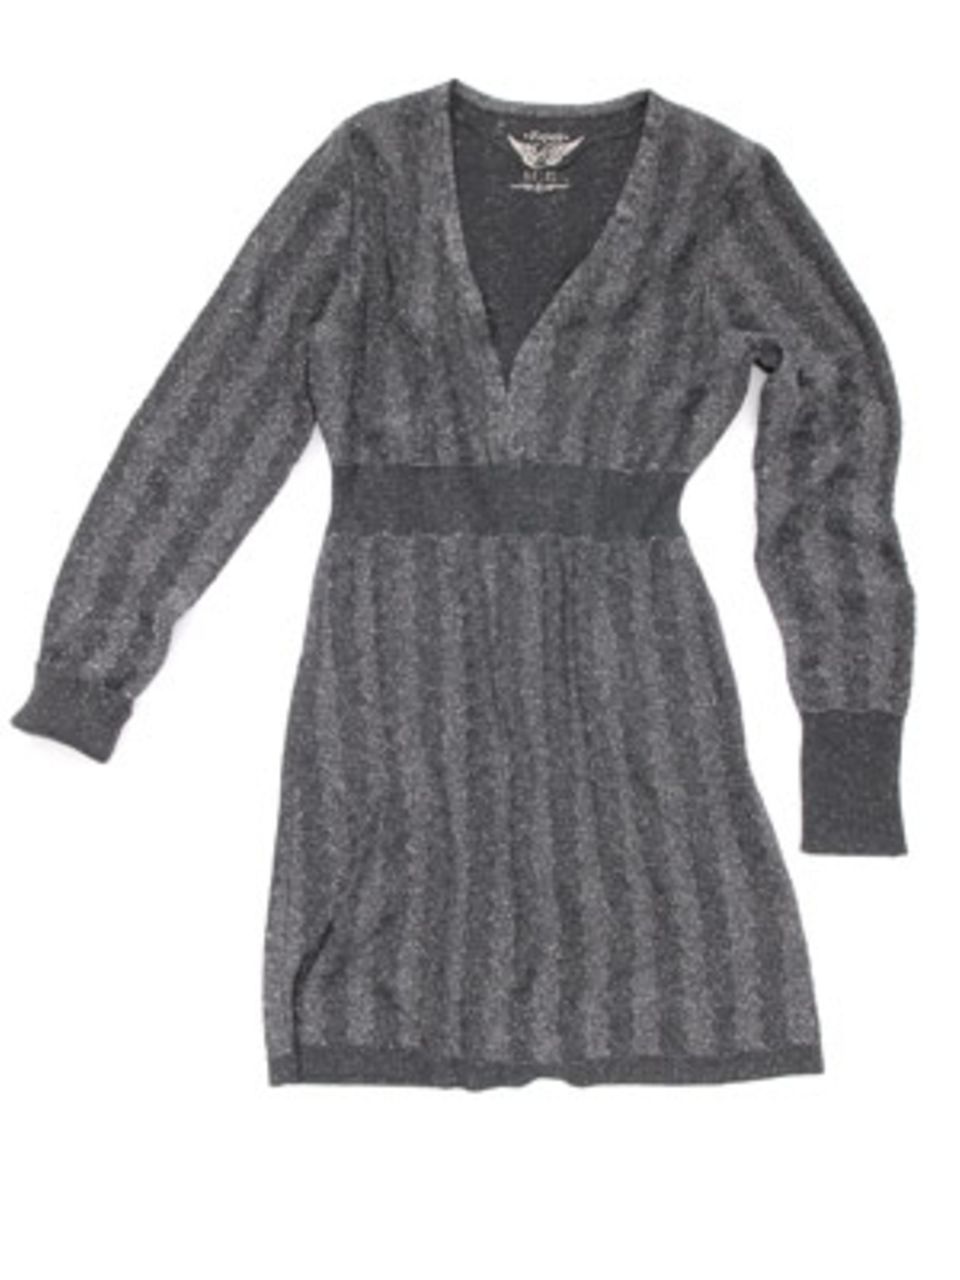 Grauer Pullover mit V-Ausschnitt; 69,95 Euro; von Esprit